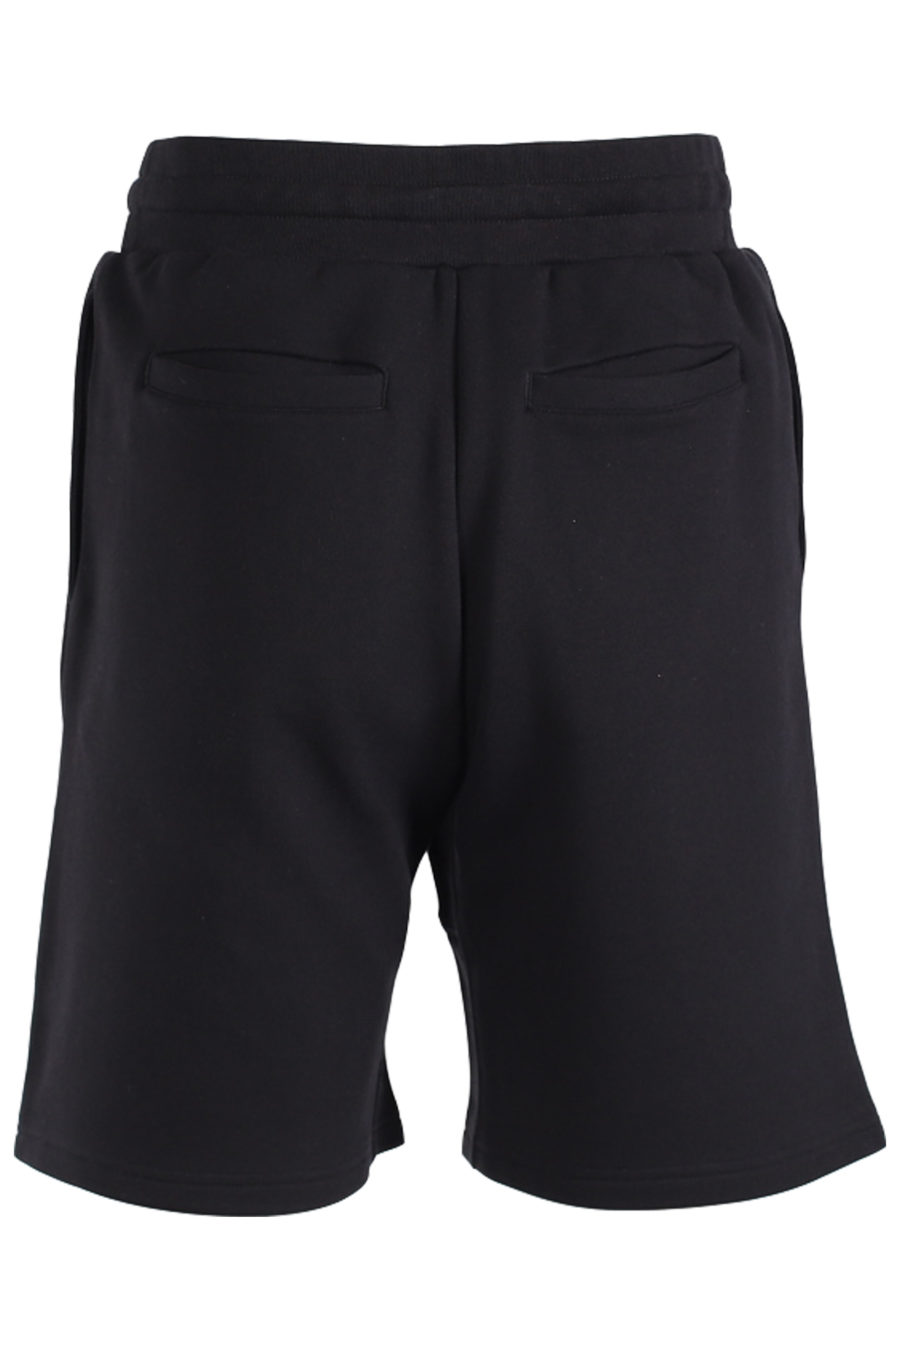 Schwarze Shorts mit weißem Logo vorne - IMG 1418